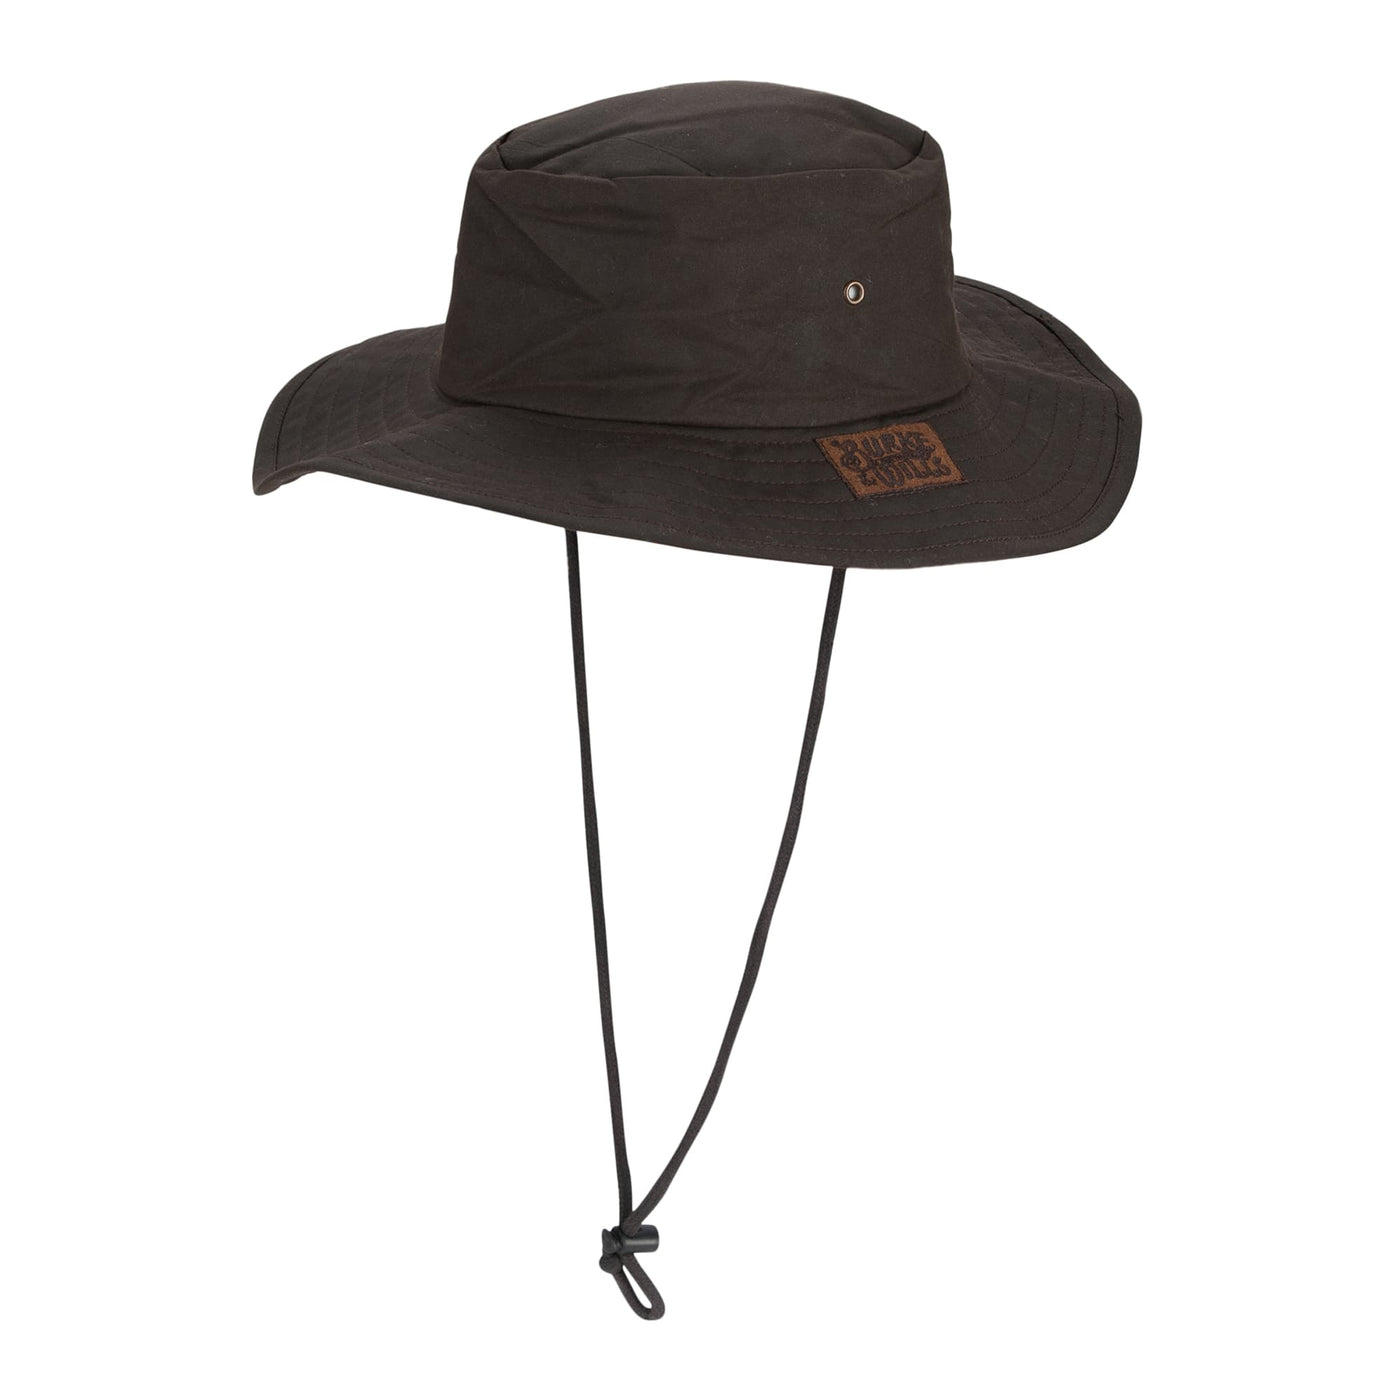 Burke & Wills Flinders Hat (No Flap) | Brown - Outback Traders Australia